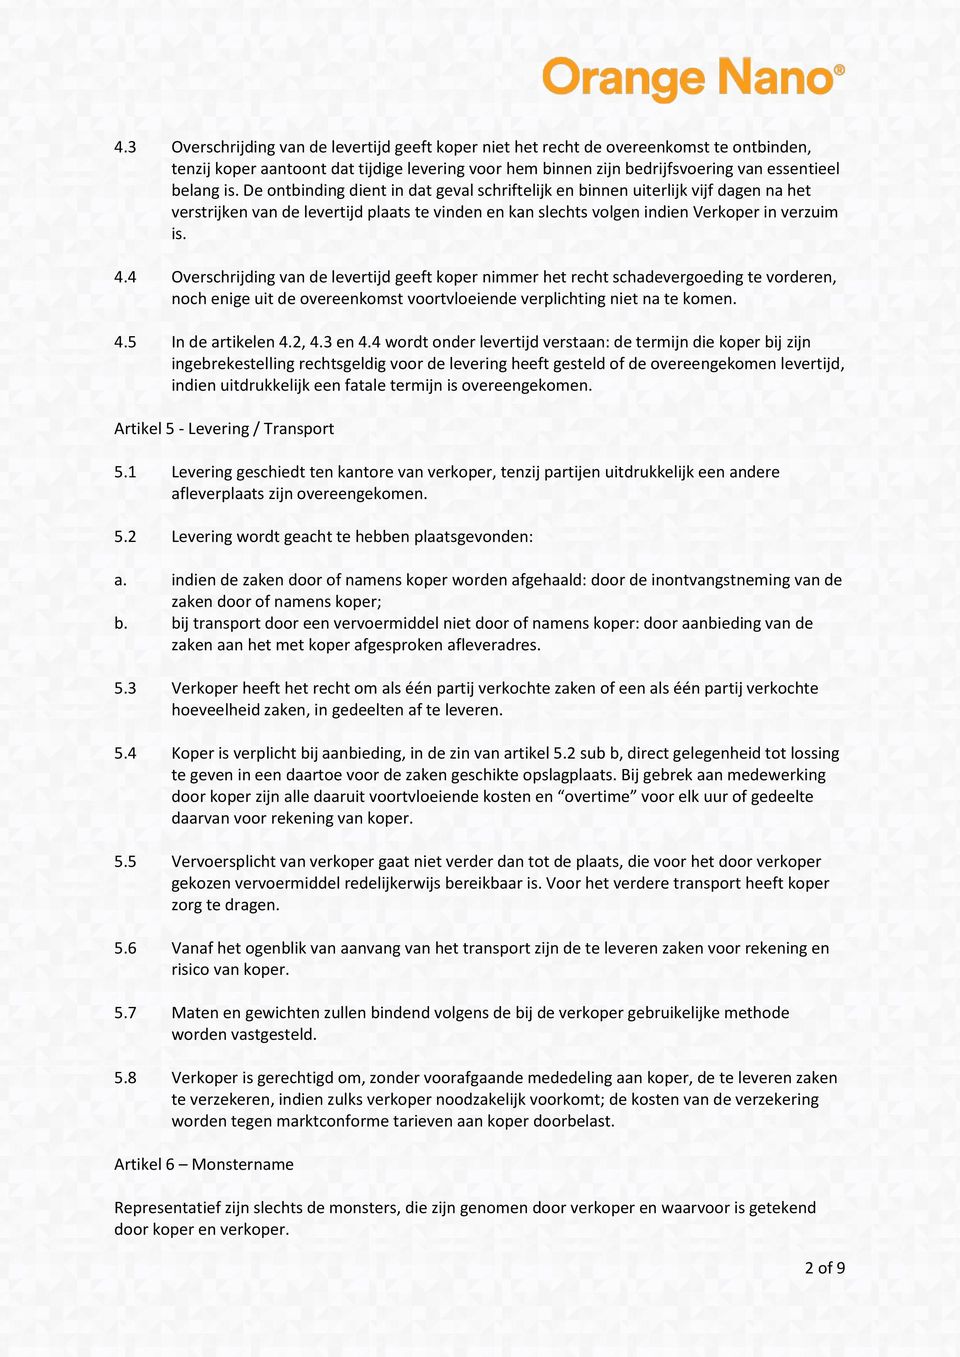 4 Overschrijding van de levertijd geeft koper nimmer het recht schadevergoeding te vorderen, noch enige uit de overeenkomst voortvloeiende verplichting niet na te komen. 4.5 In de artikelen 4.2, 4.